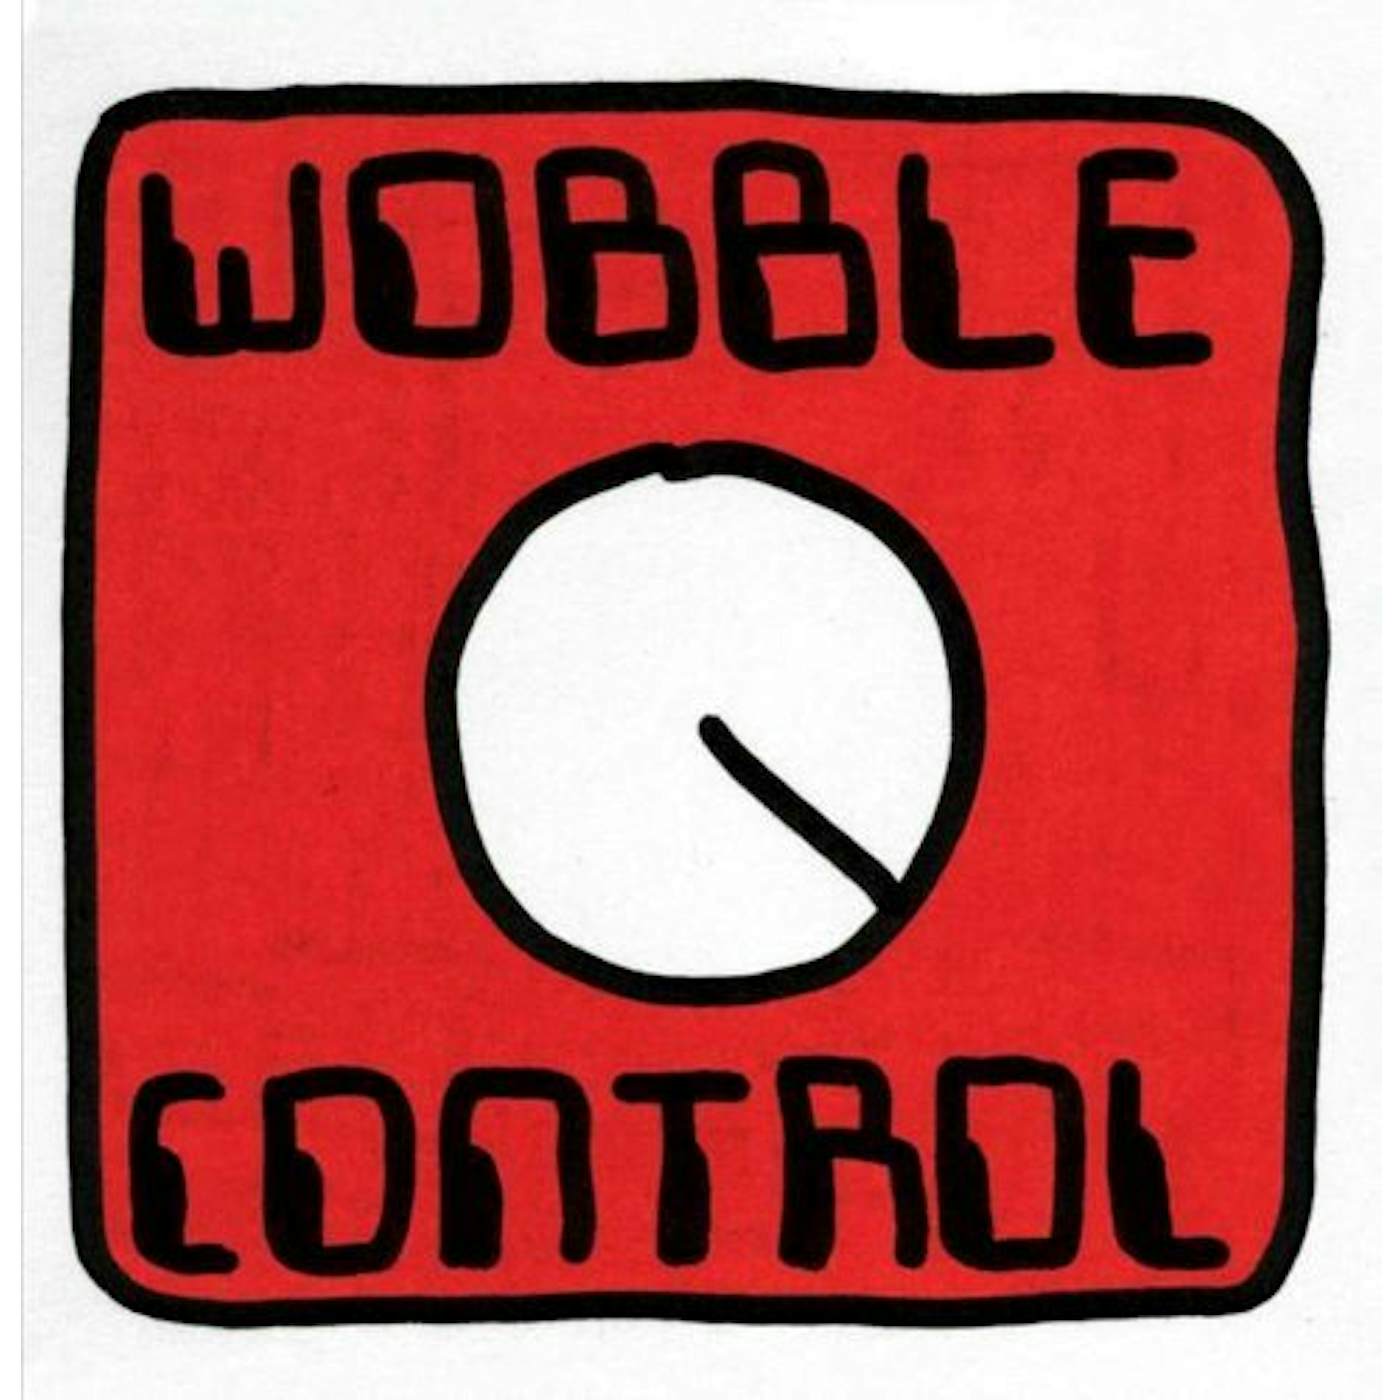 Mr. Scruff Wobble Control Vinyl Record